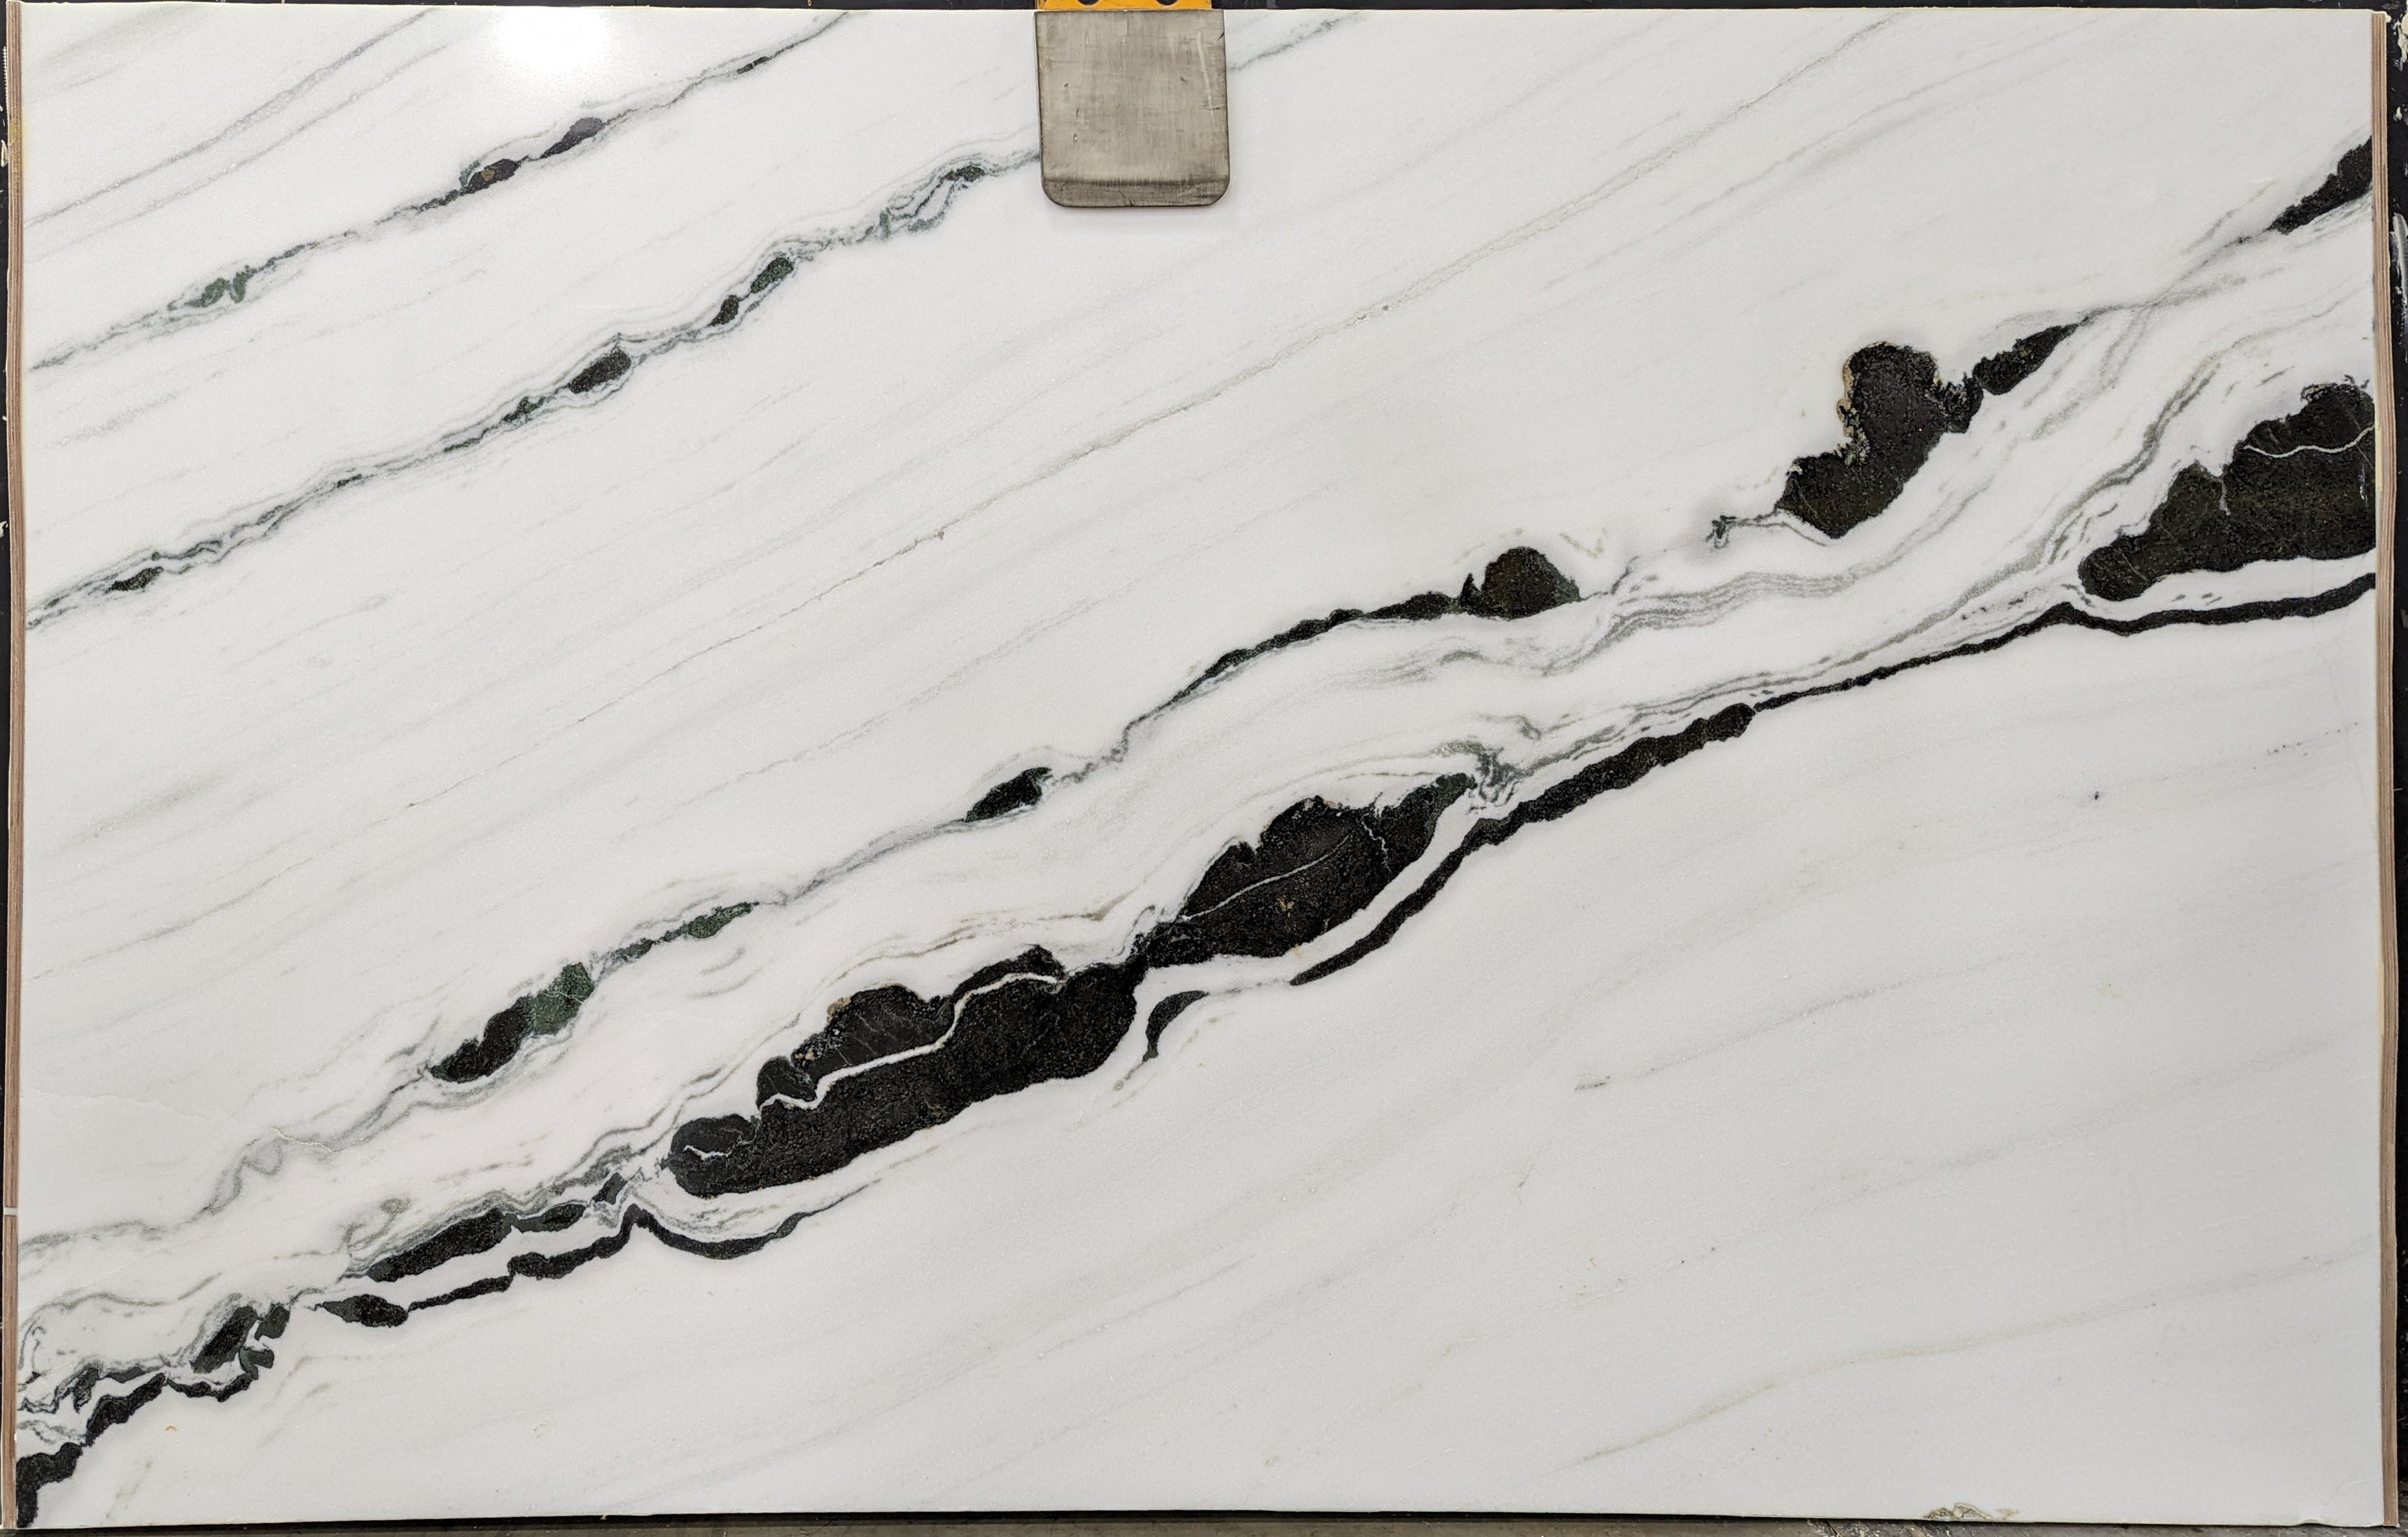  Panda White Marble Slab 3/4  Polished Stone - P12722#36 -  66x104 